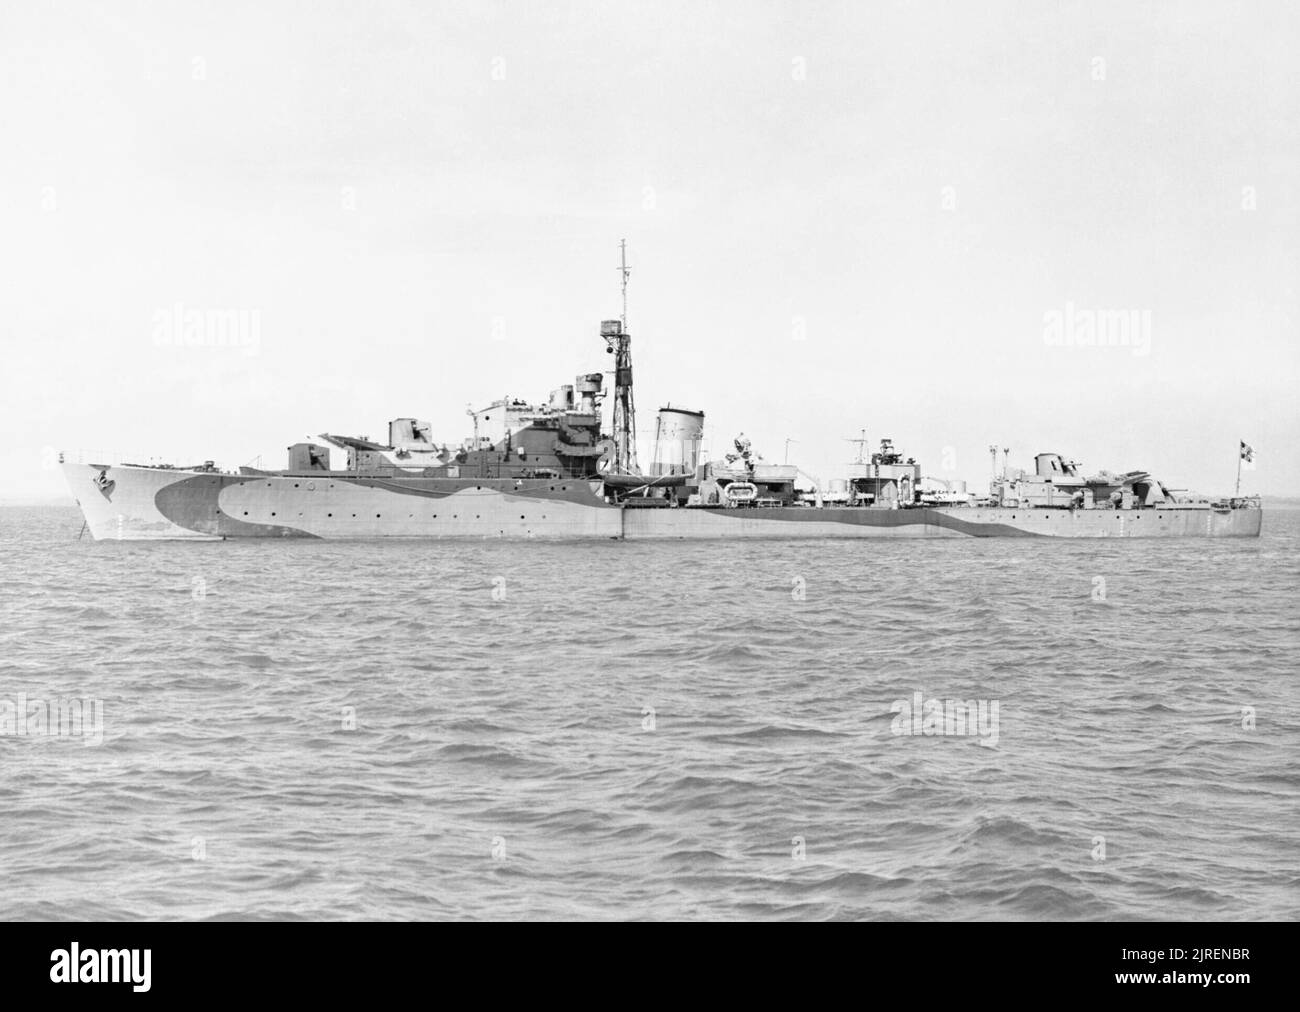 La Marine royale norvégienne pendant la Seconde Guerre mondiale une bordée sur le destroyer norvégien KNM STORD en cours en mer. Banque D'Images